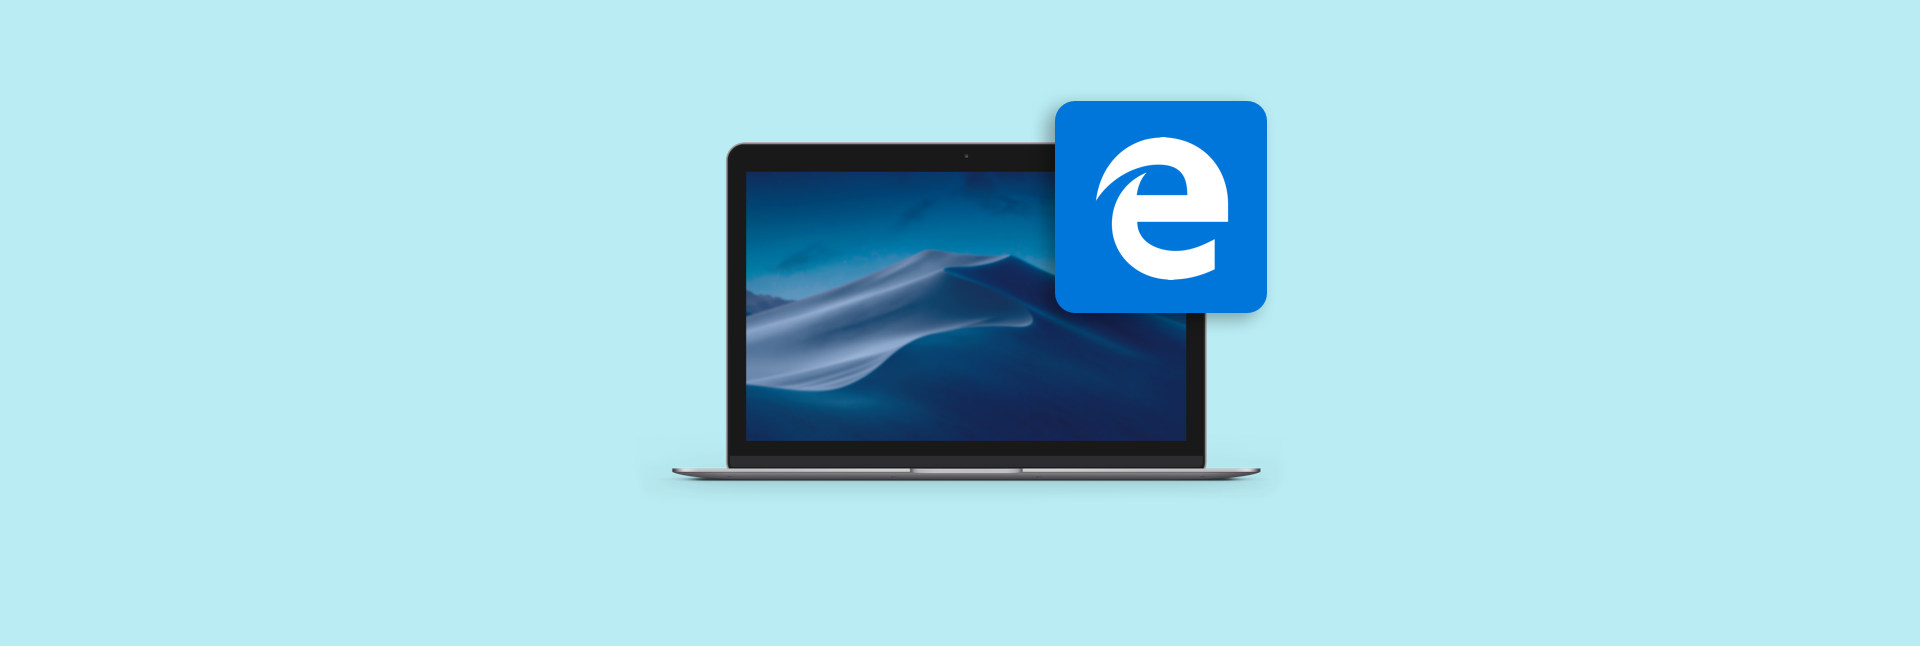 microsoft edge browser mac